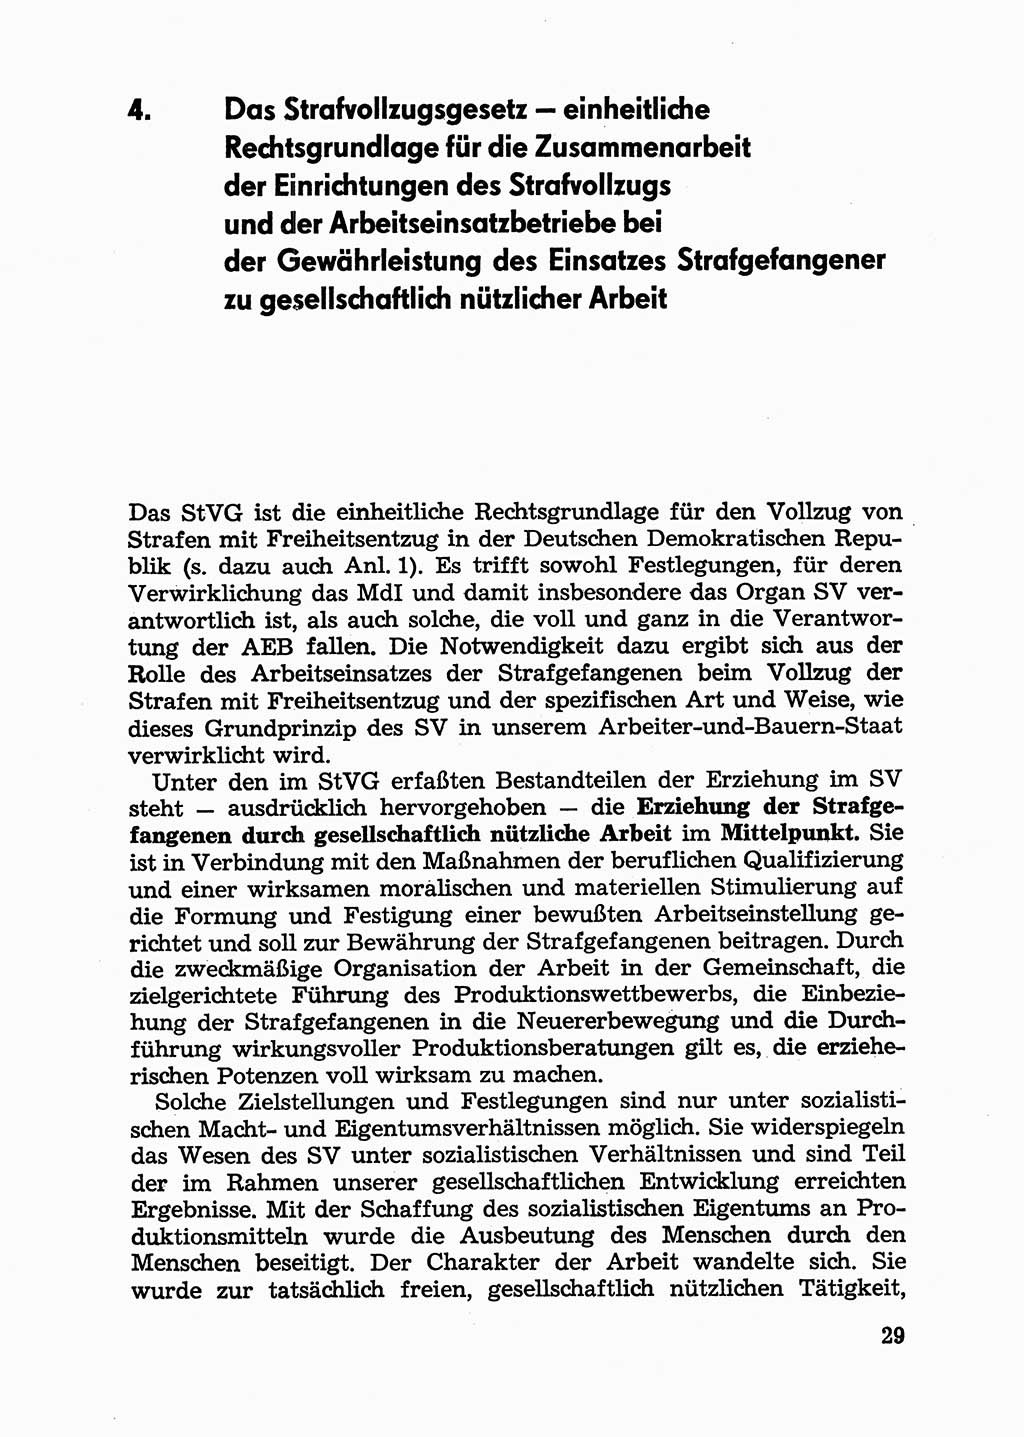 Handbuch für Betriebsangehörige, Abteilung Strafvollzug (SV) [Ministerium des Innern (MdI) Deutsche Demokratische Republik (DDR)] 1981, Seite 29 (Hb. BA Abt. SV MdI DDR 1981, S. 29)